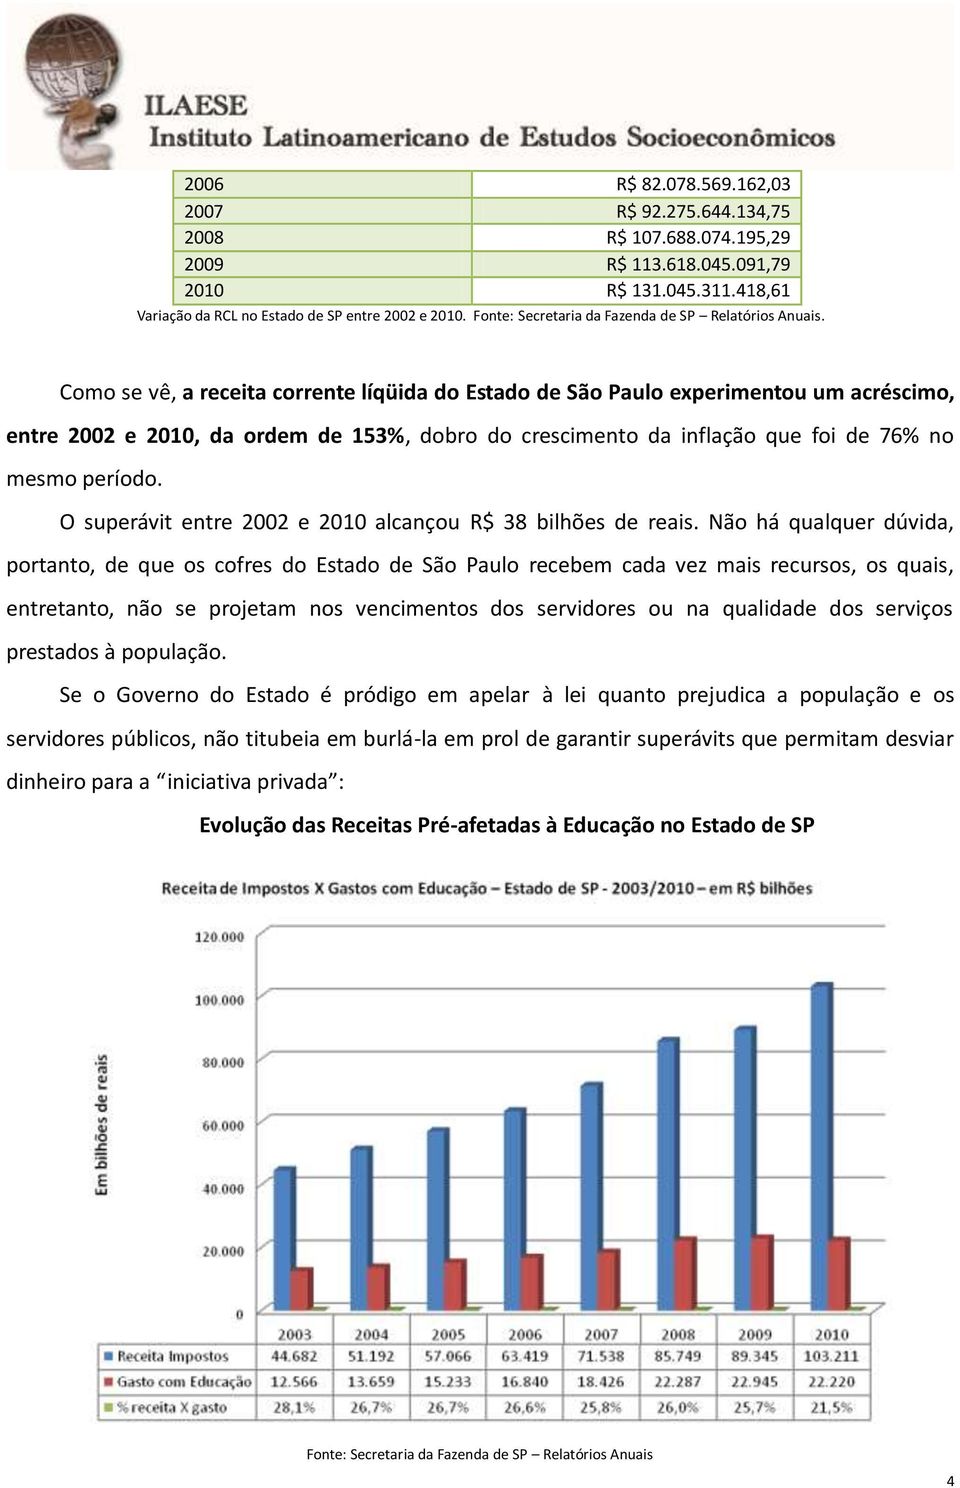 Como se vê, a receita corrente líqüida do Estado de São Paulo experimentou um acréscimo, entre 2002 e 2010, da ordem de 153%, dobro do crescimento da inflação que foi de 76% no mesmo período.